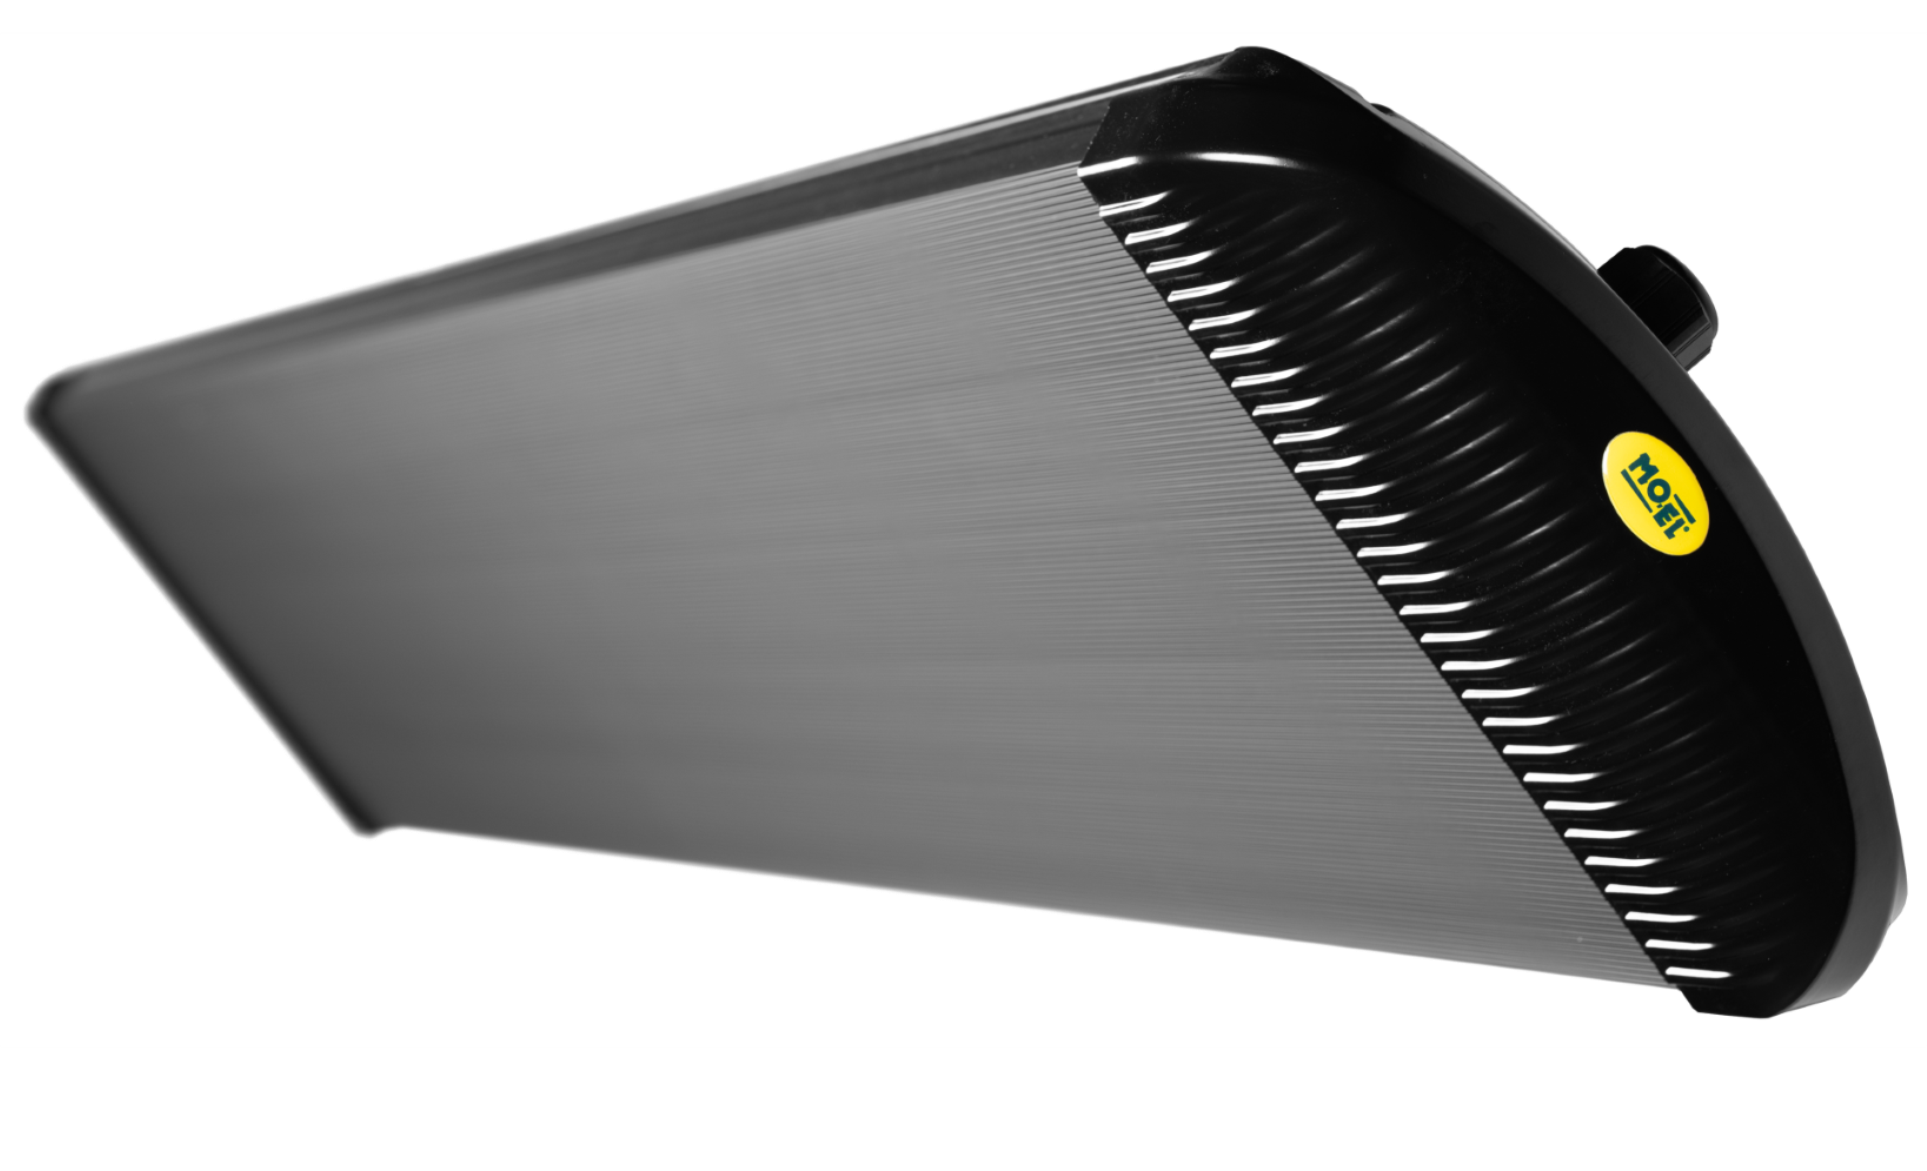 Uil Interpretatief verbinding verbroken Elektrische donkerstraler type TVS HT 3200 D - zwart - art.nr. 202356 -  Terrasverwarmers